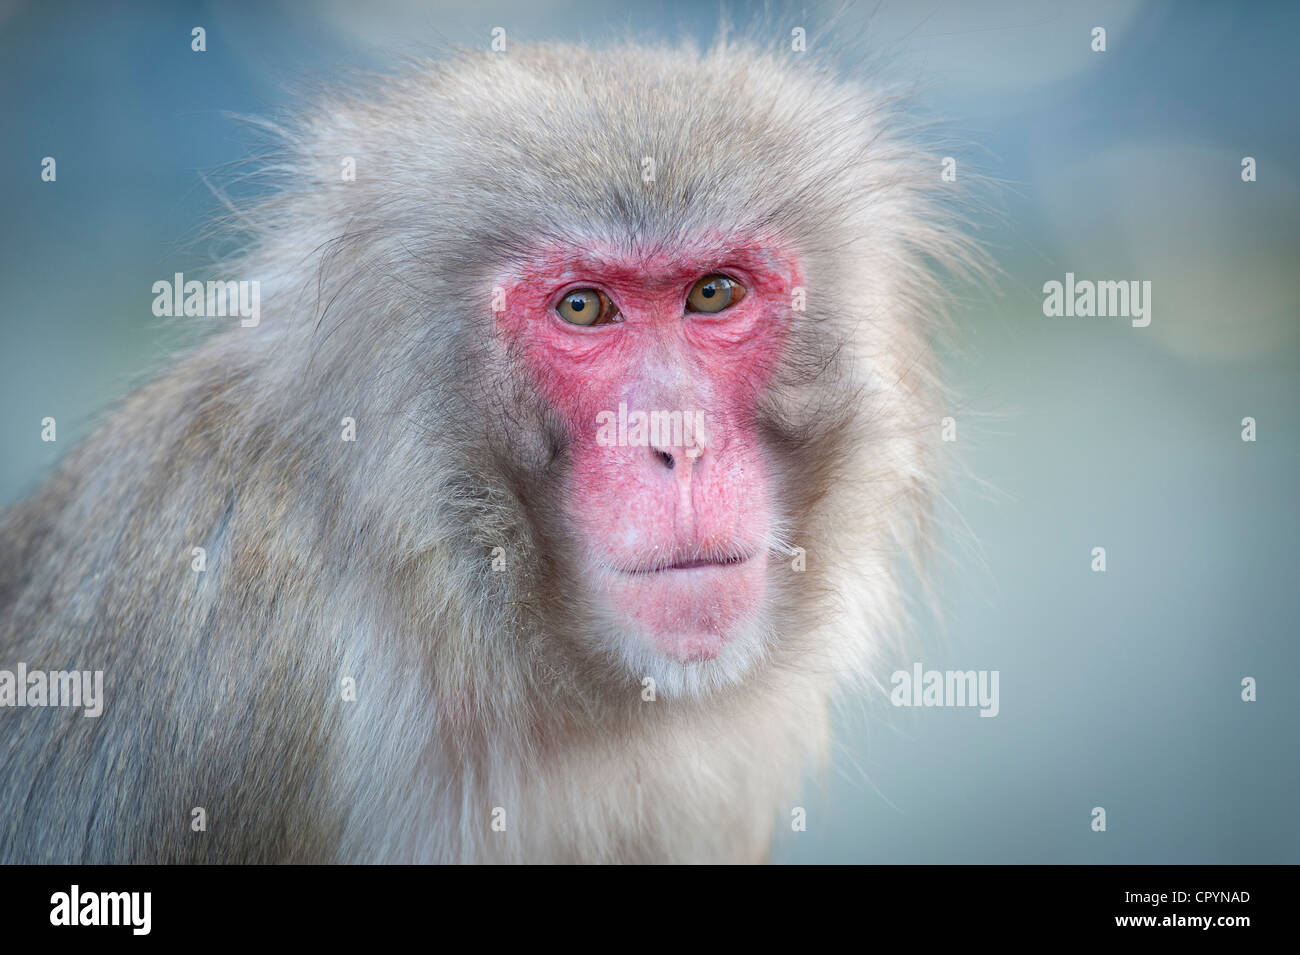 Rosso-di fronte macaco (Macaca fuscata), ritratto, zoologico Wilhelma giardino botanico, Stoccarda, Germania, Europa Foto Stock